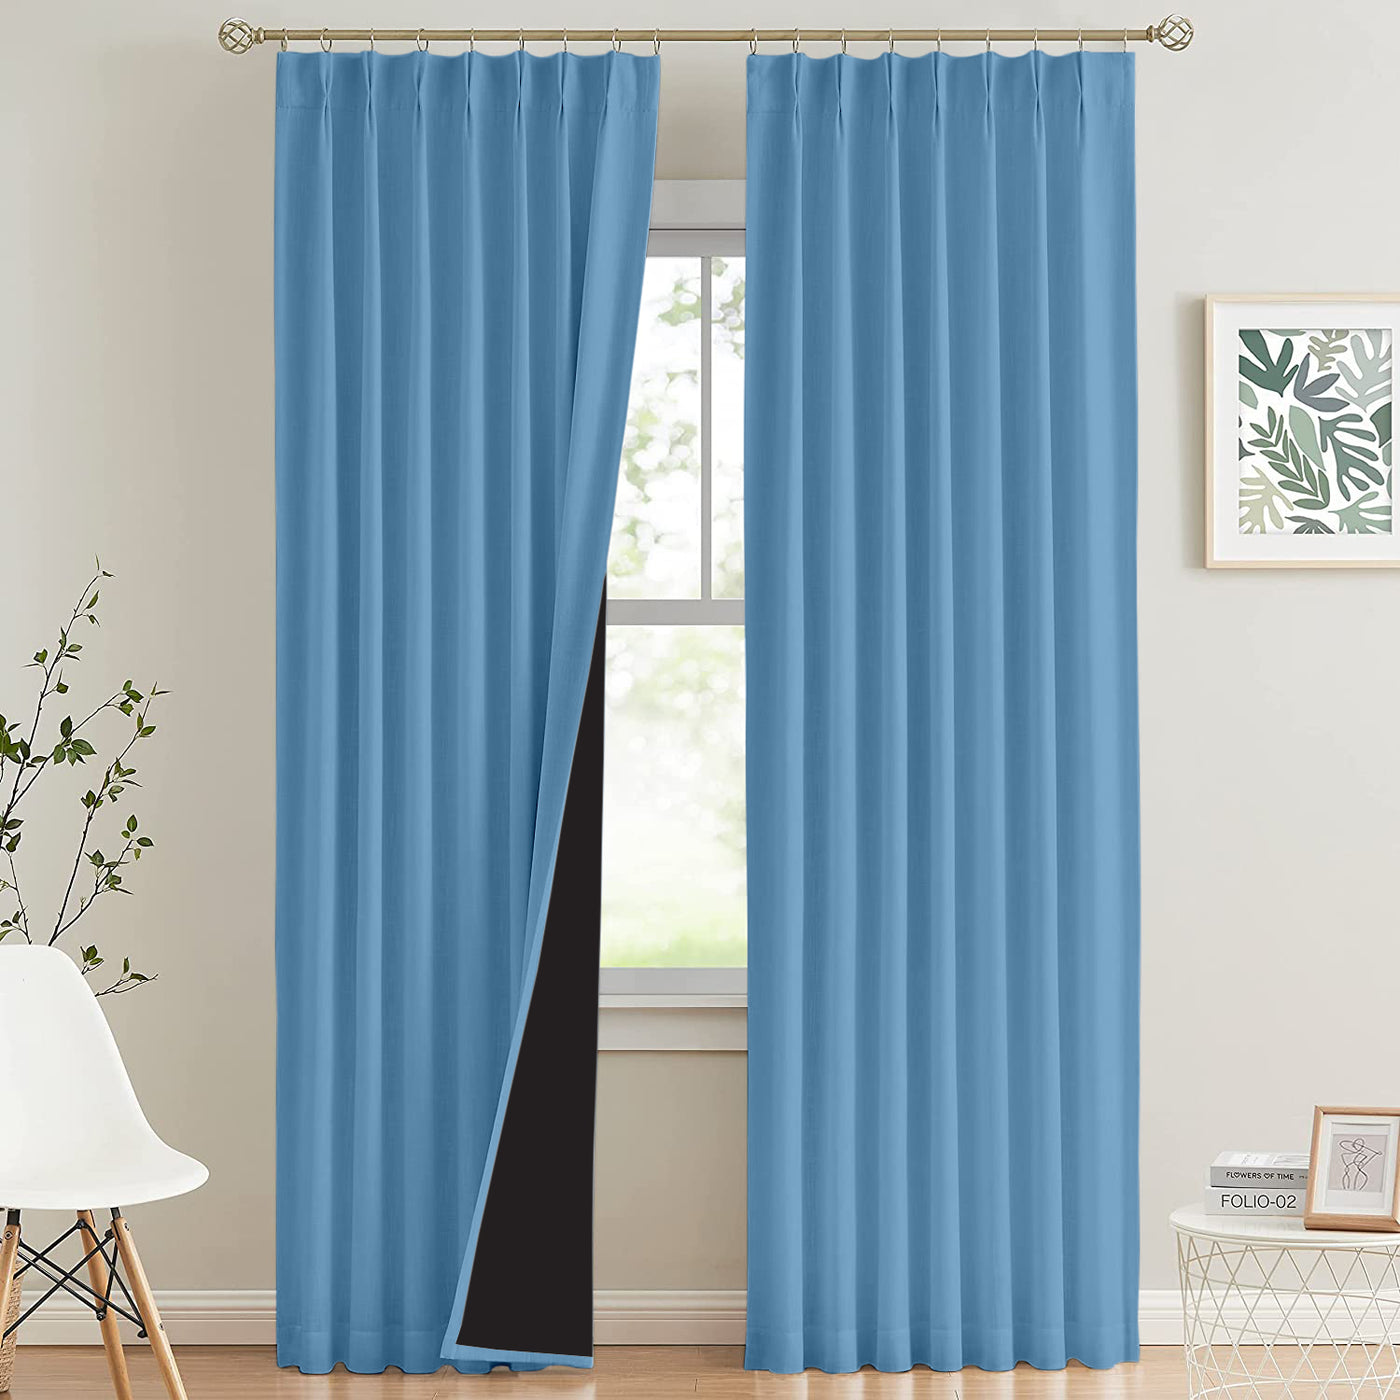 Double Pinch Pleat 100% Blackout Curtains 1 Panel - Light Colors